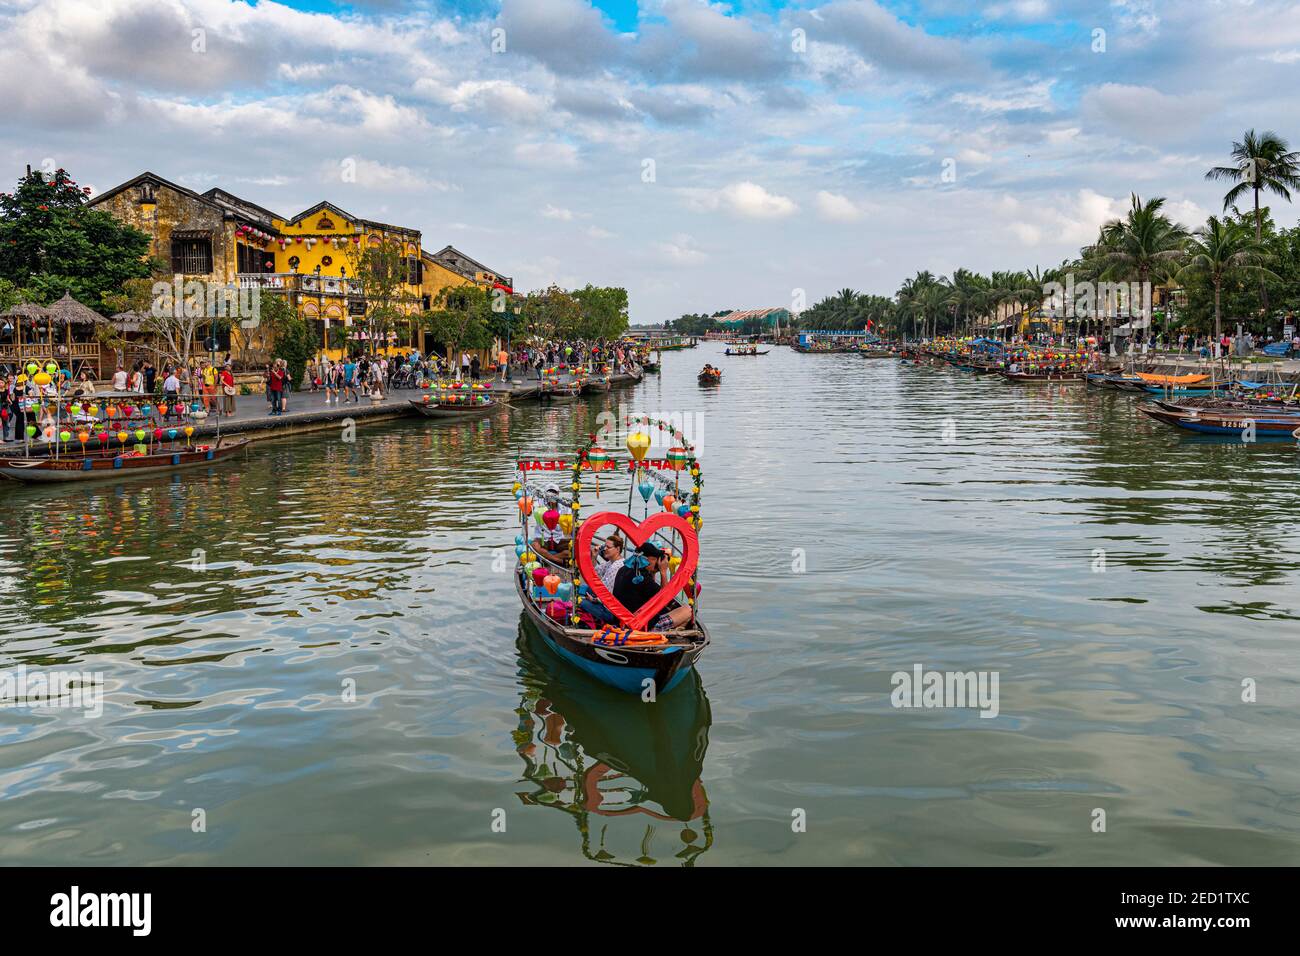 Bateau avec coeur, bord de rivière, vieille ville, Hoi an, Vietnam Banque D'Images